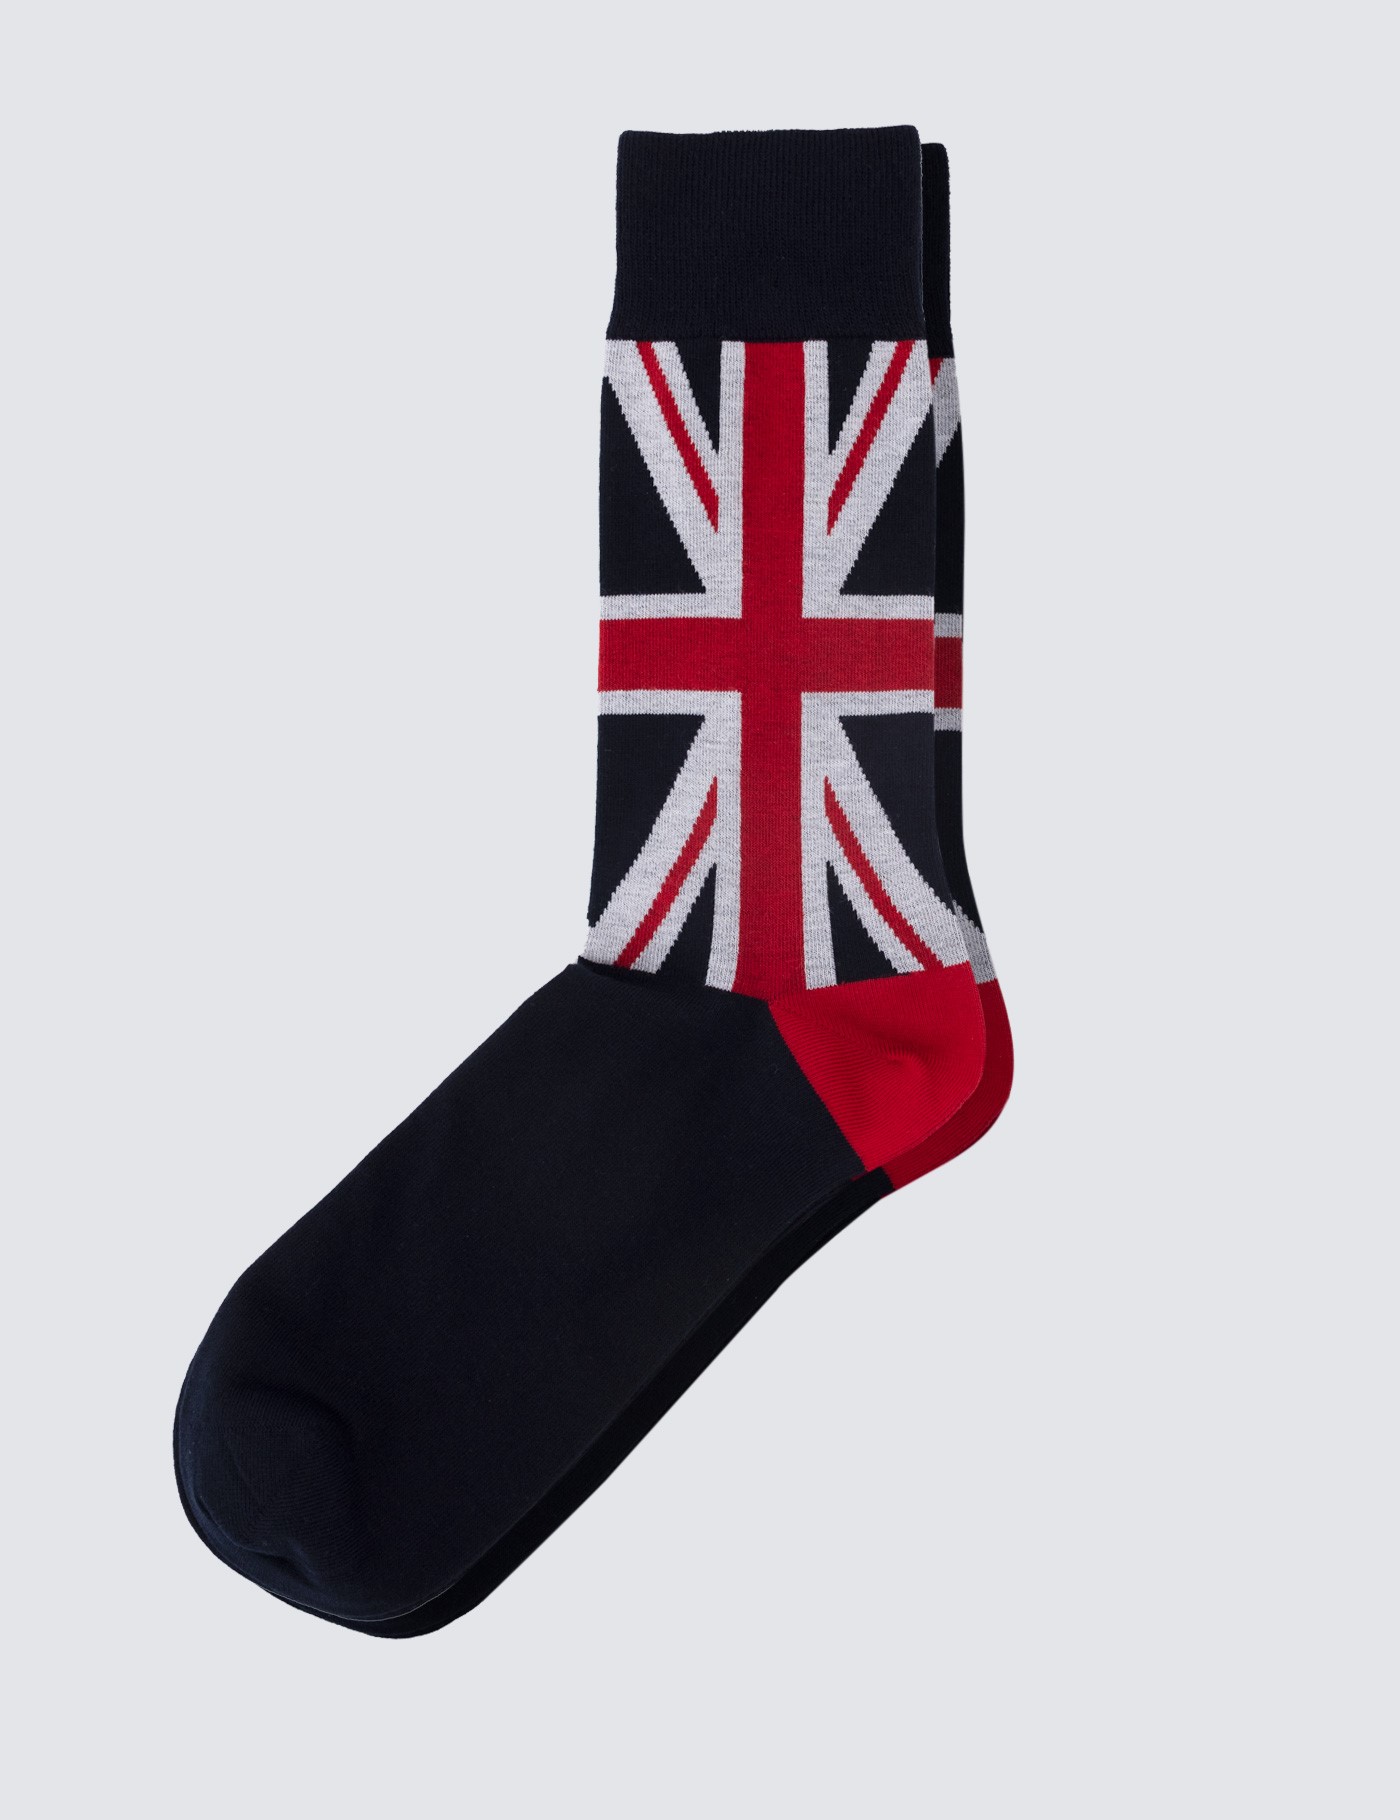 Men's Union Jack Flag Socks